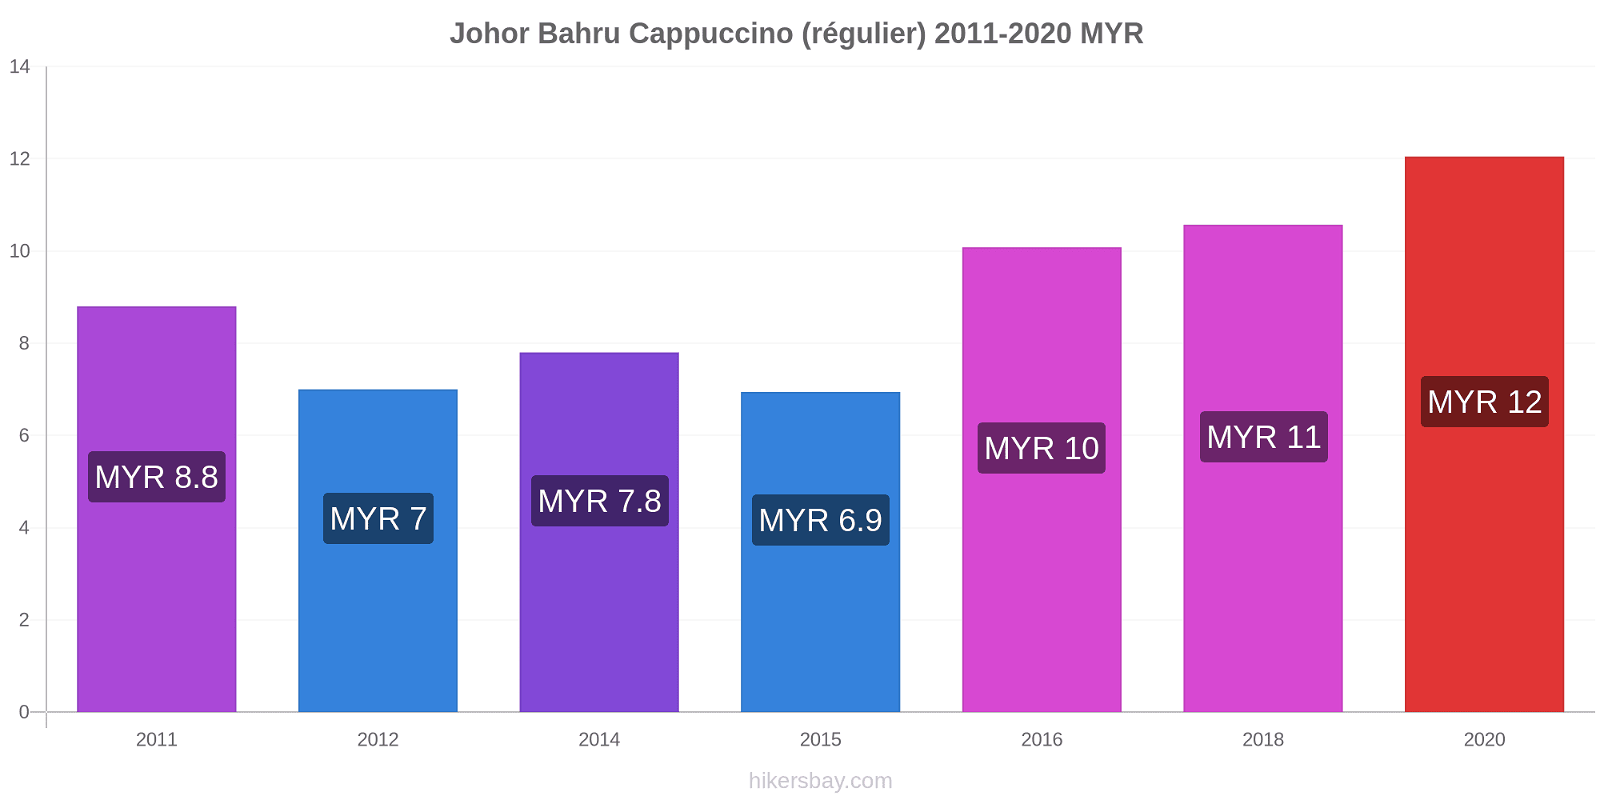 Johor Bahru changements de prix Cappuccino (régulier) hikersbay.com